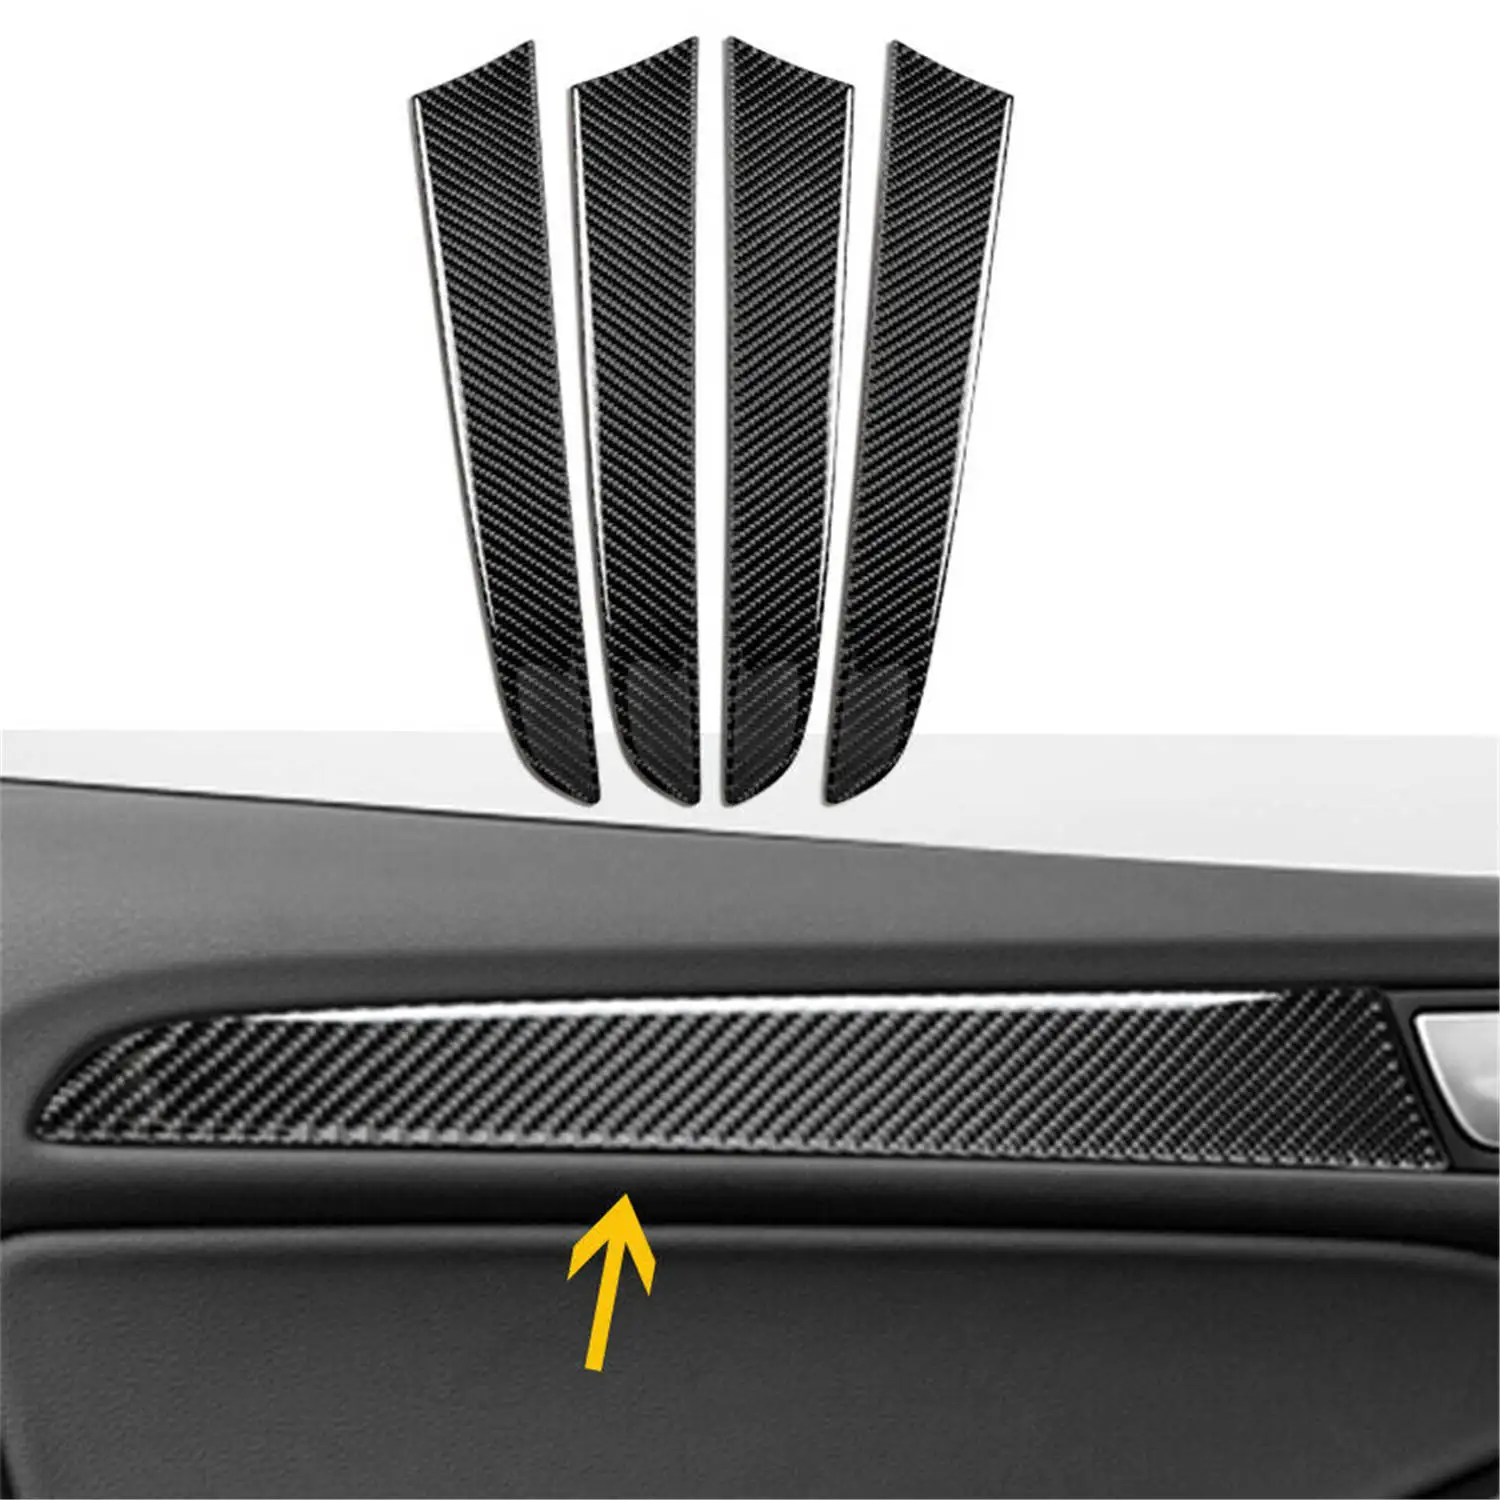 

4x Carbon Fiber Interior Door Panel Strip Trim Auto Accessories For Au di Q5 2010-18 SQ5 2014-17 Car Decoration Sticker